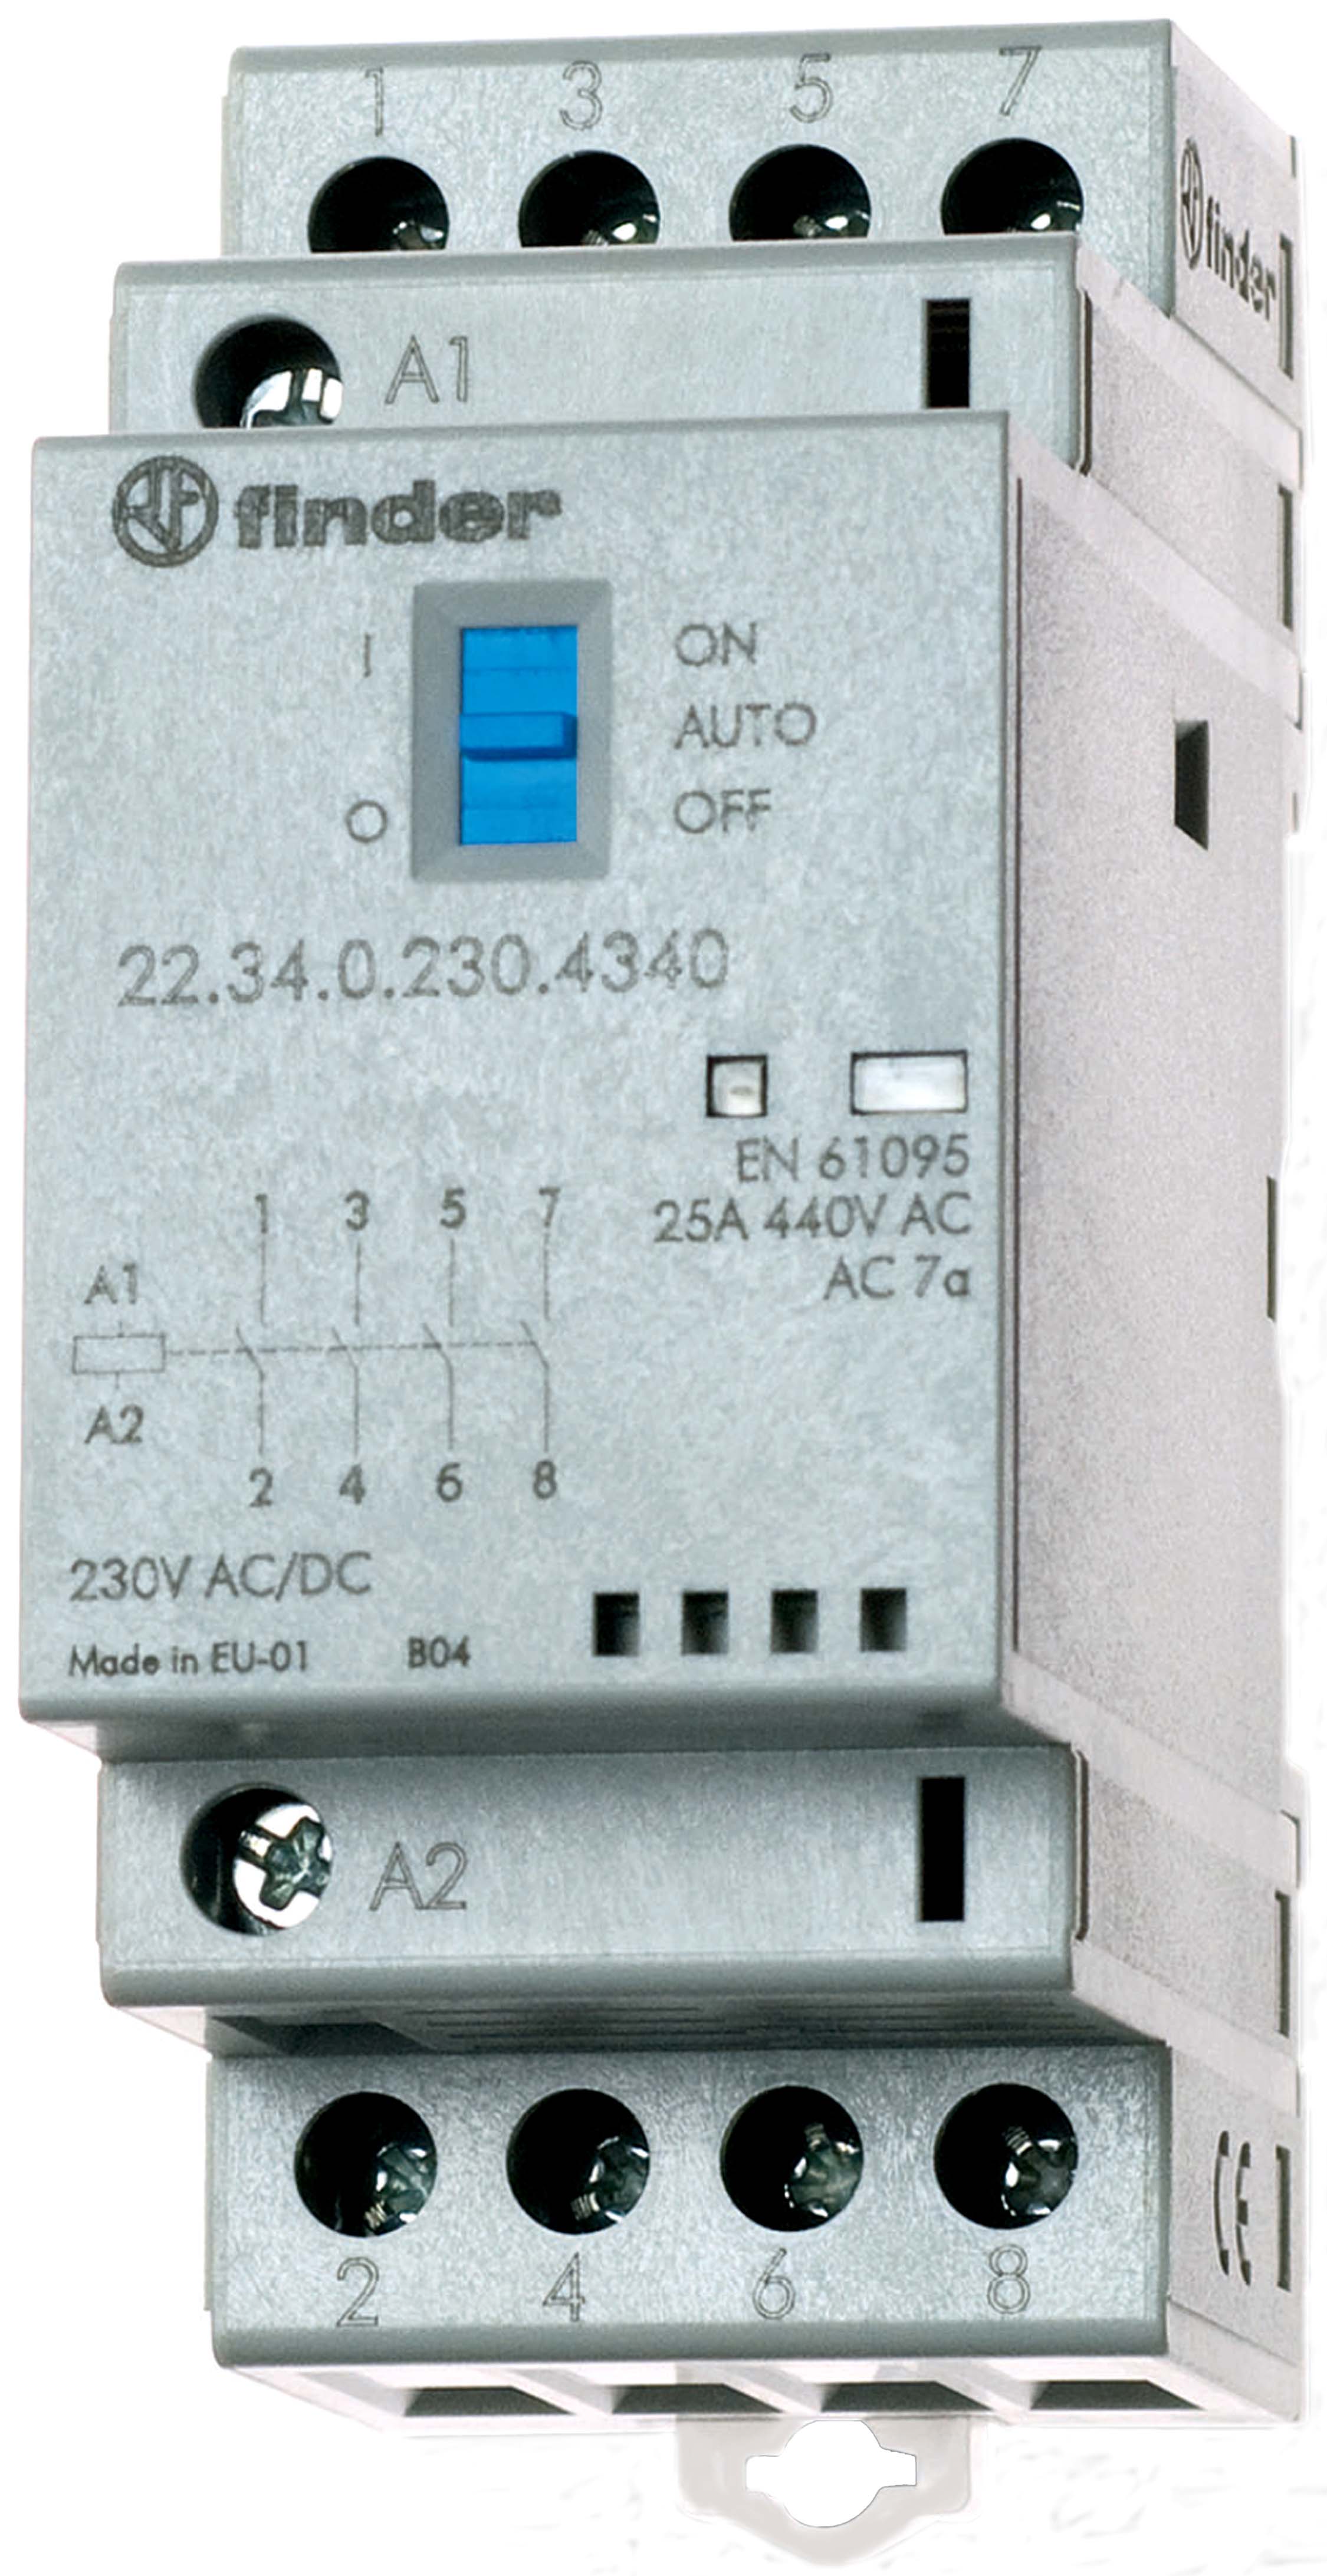 Finder Installationsschütz 24VAC/DC,4S,LED 22.34.0.024.4340 - 223400000000